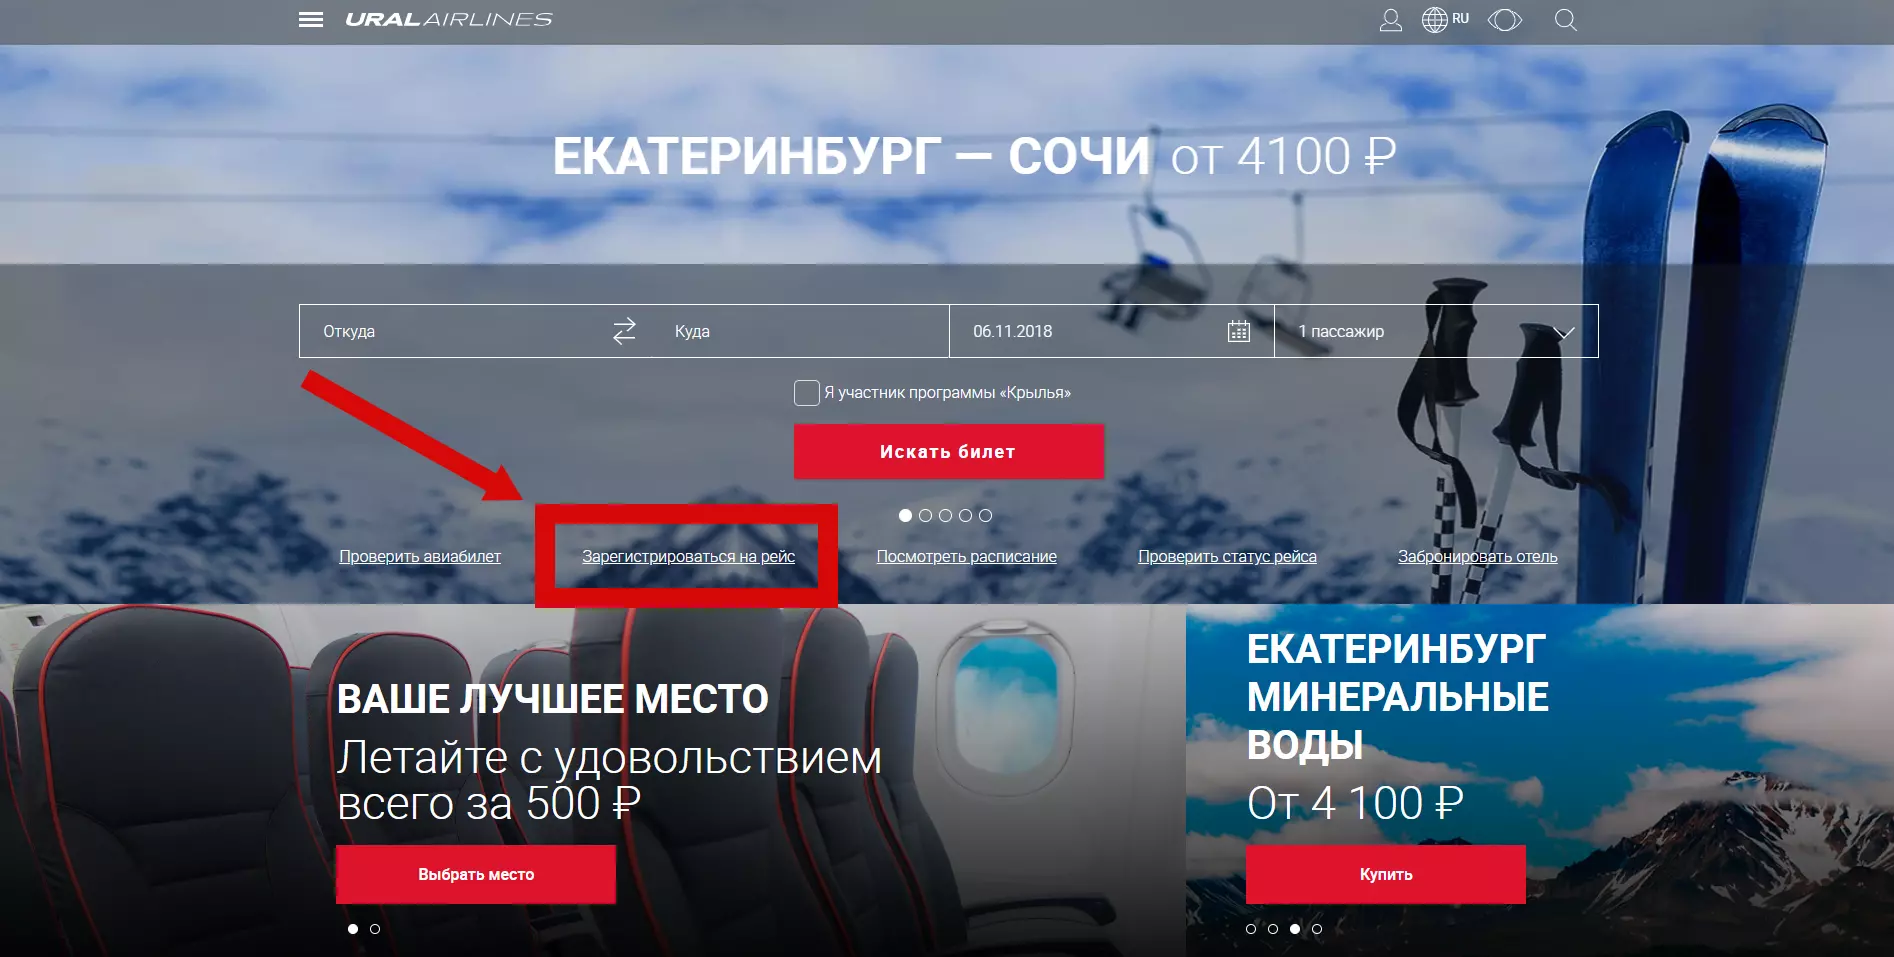 Регистрация на рейс уральские авиалинии сайт, онлайн, домодедово